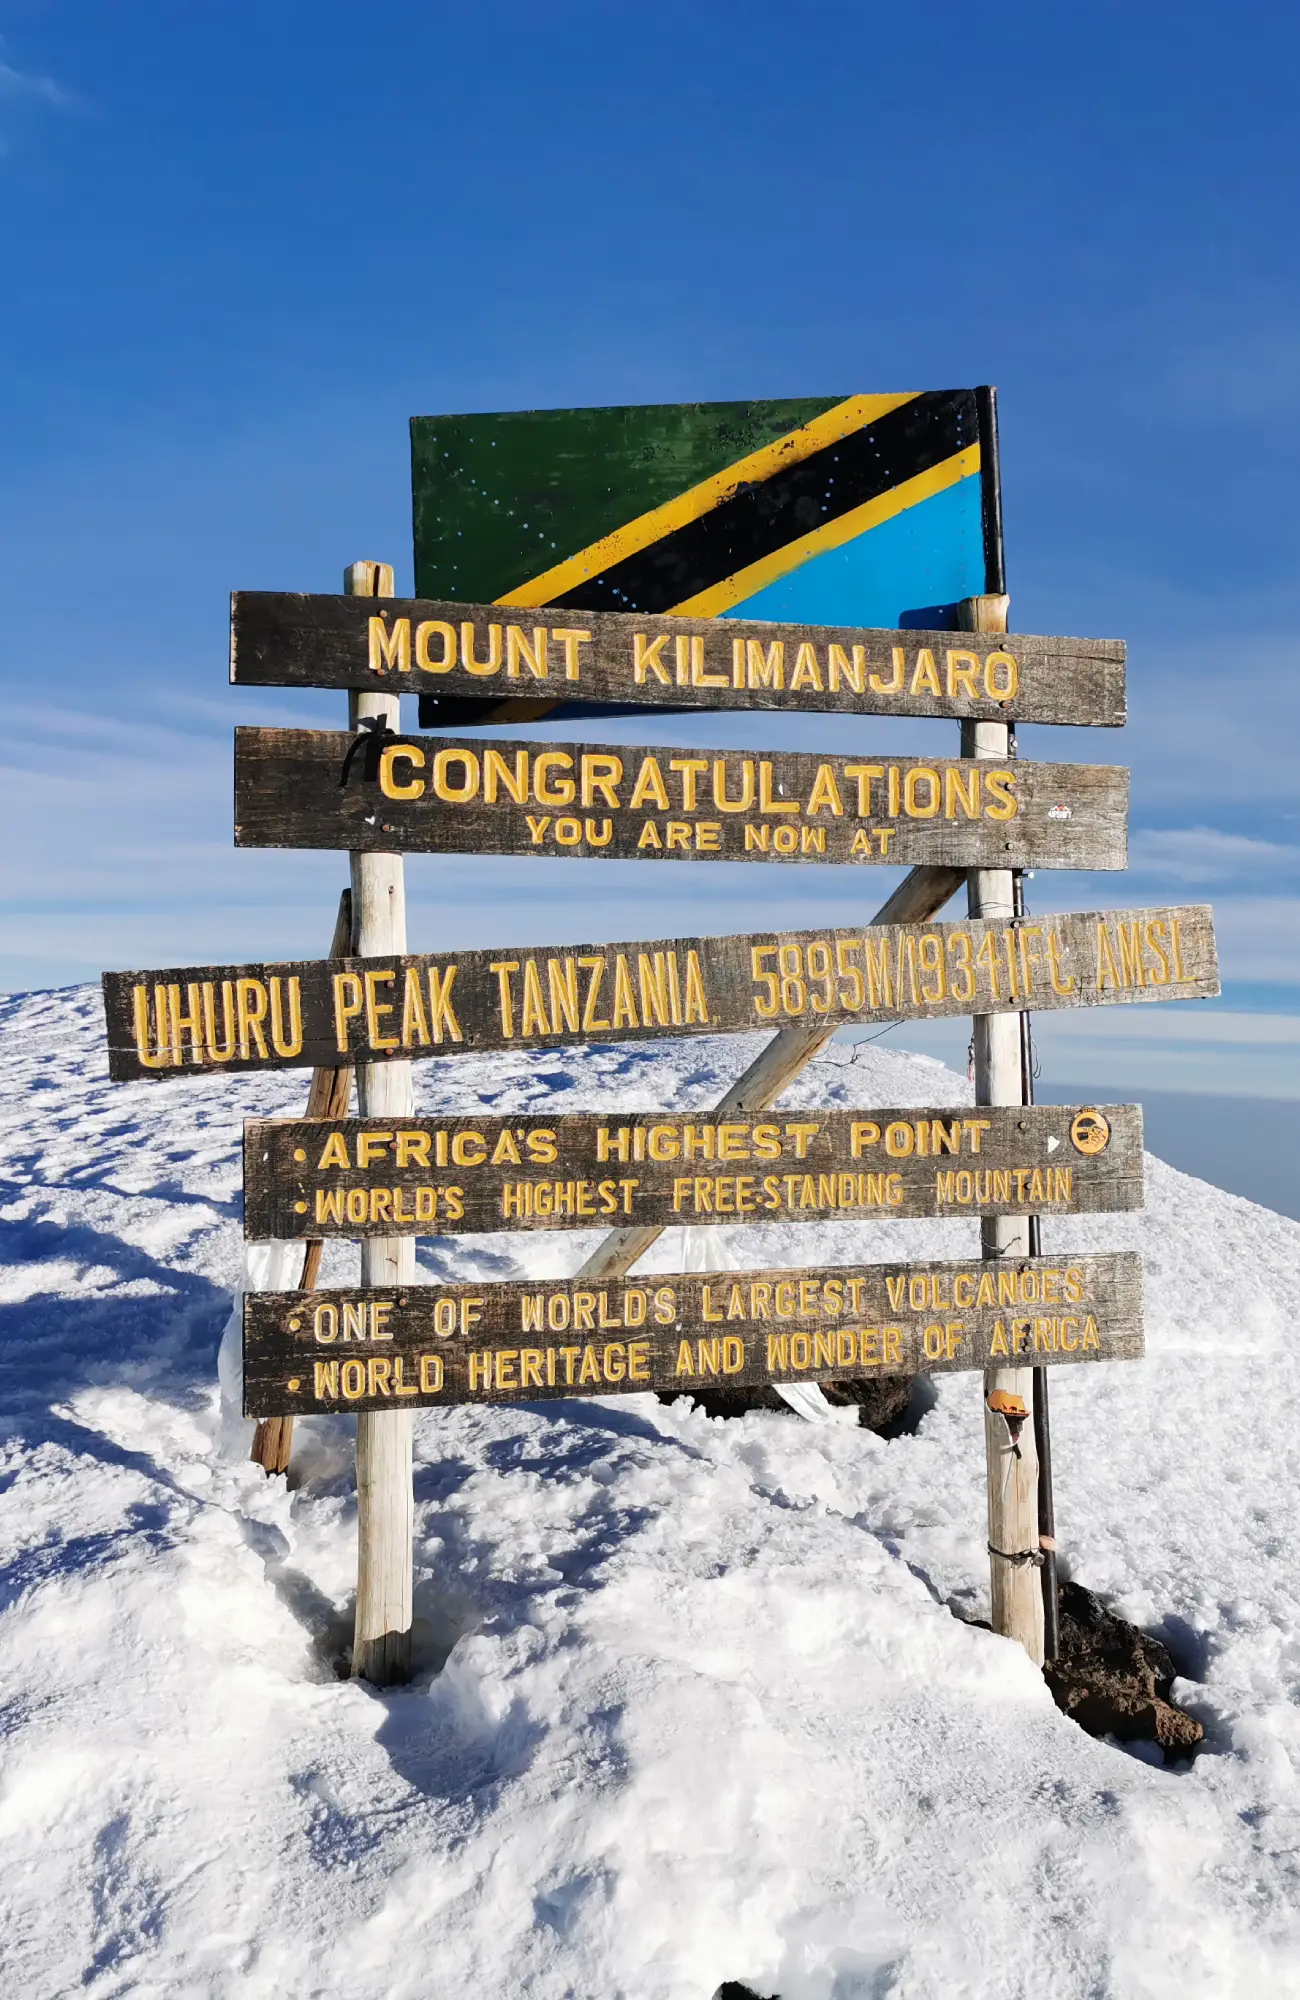 zara tours kilimanjaro tanzania pasua photos